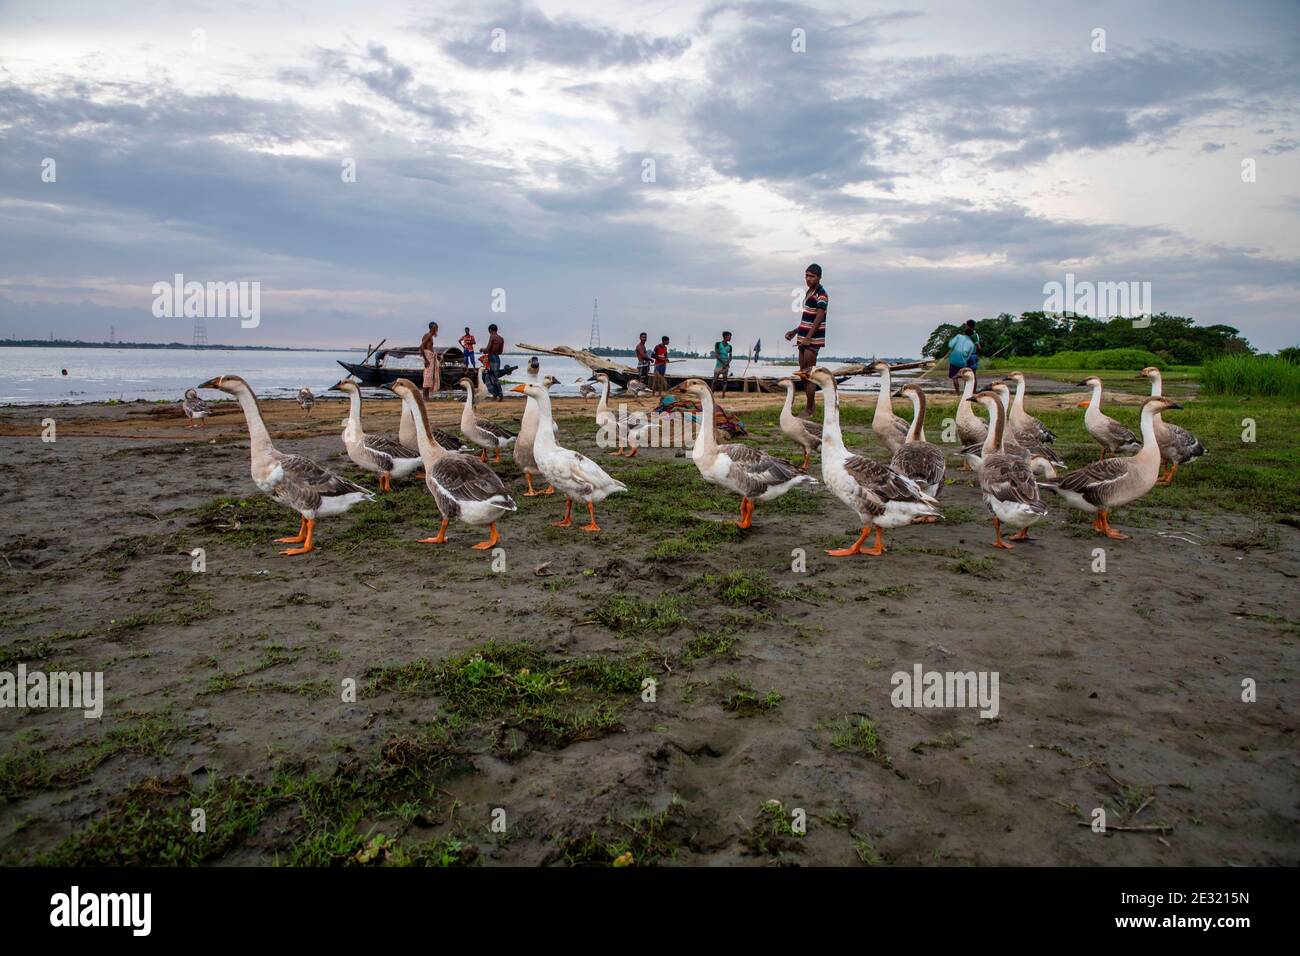 Un gregge di cigni sulla riva del fiume Meghna, Bangladesh. Foto Stock